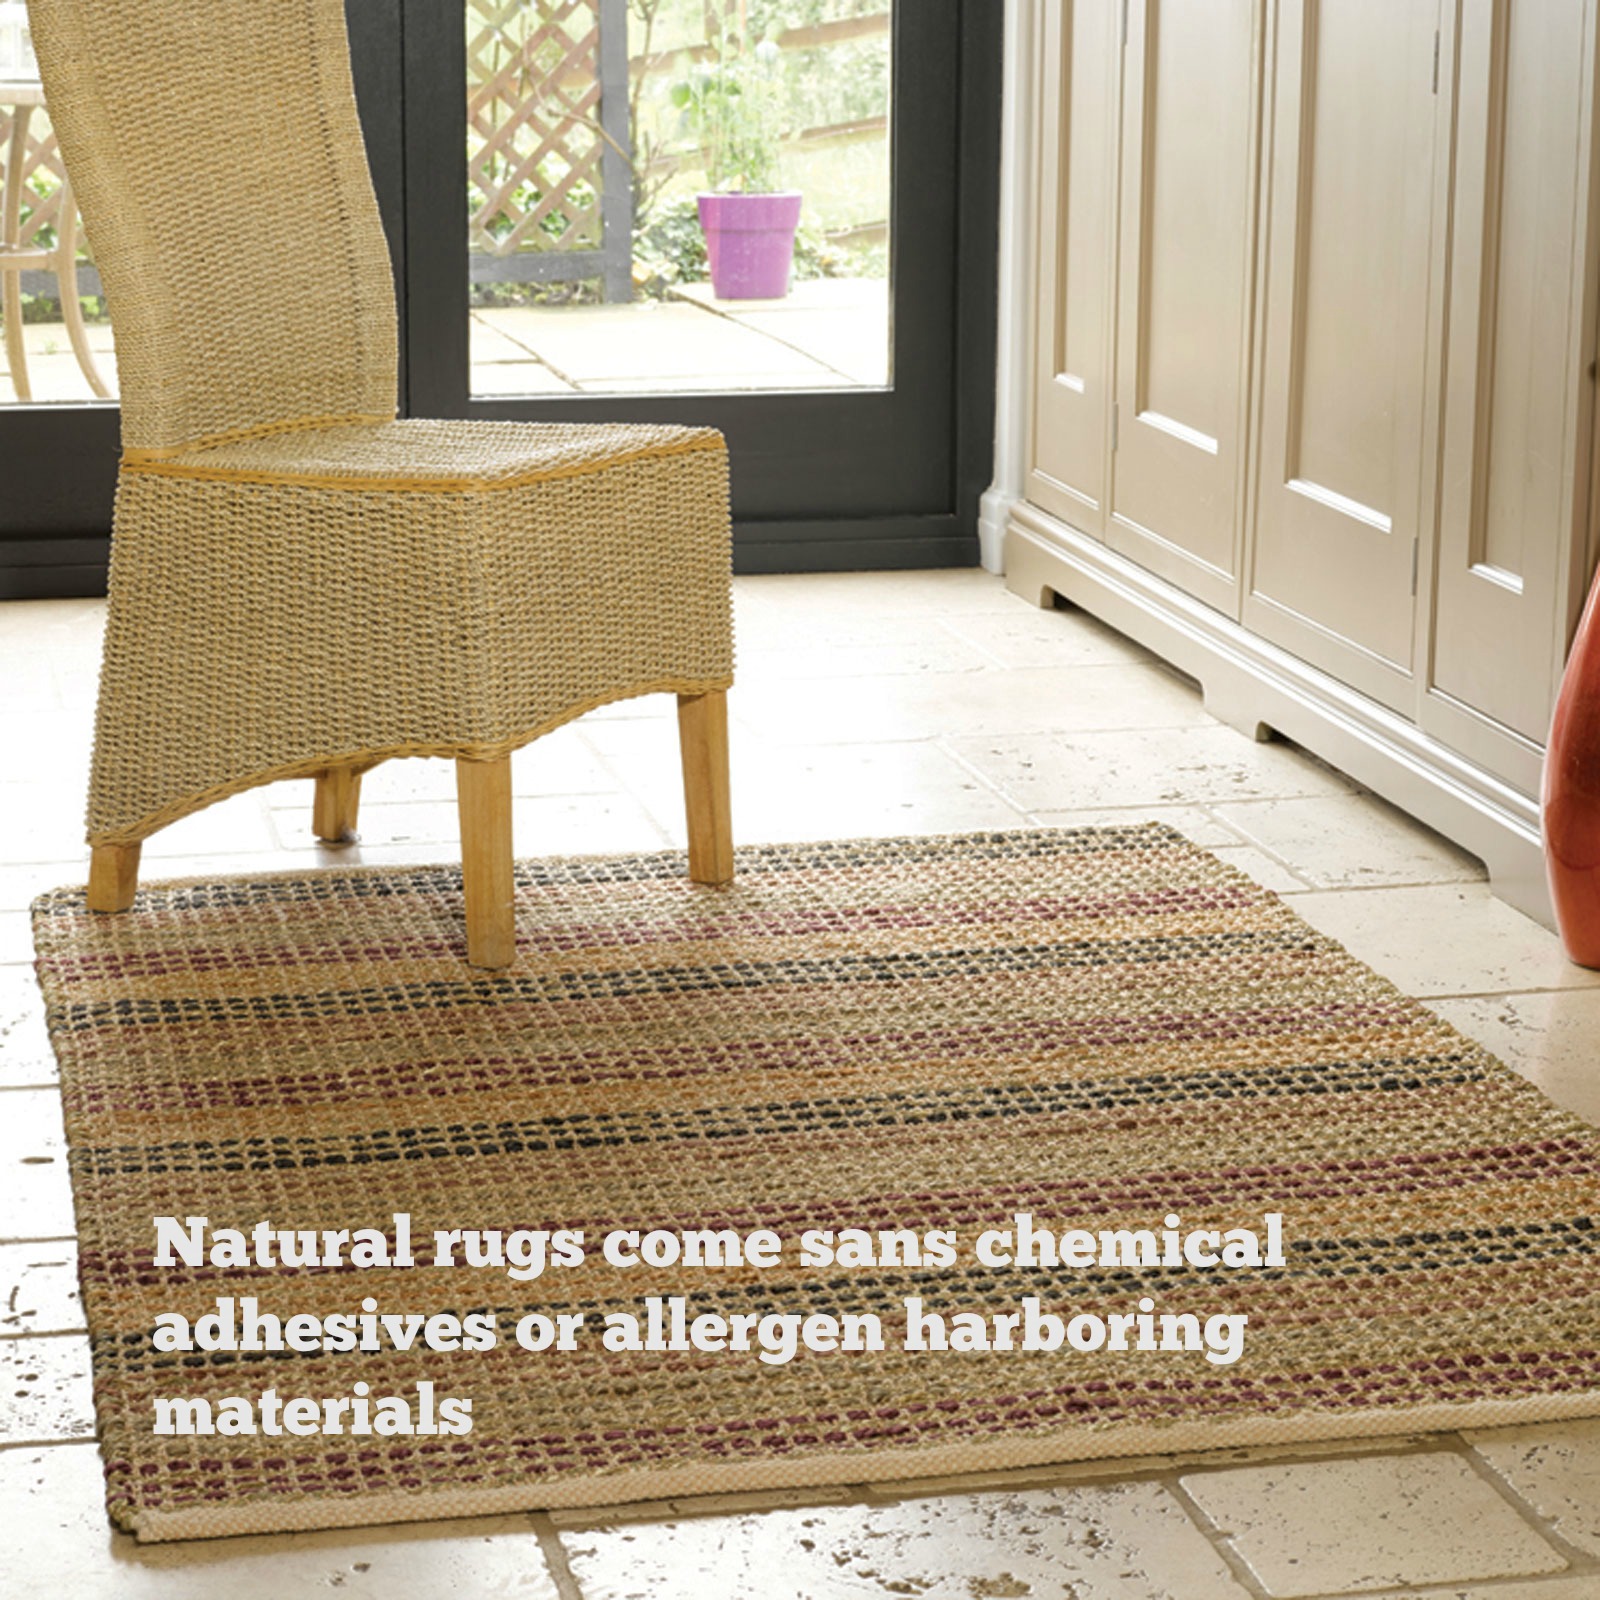 Natural rugs keep away allergies